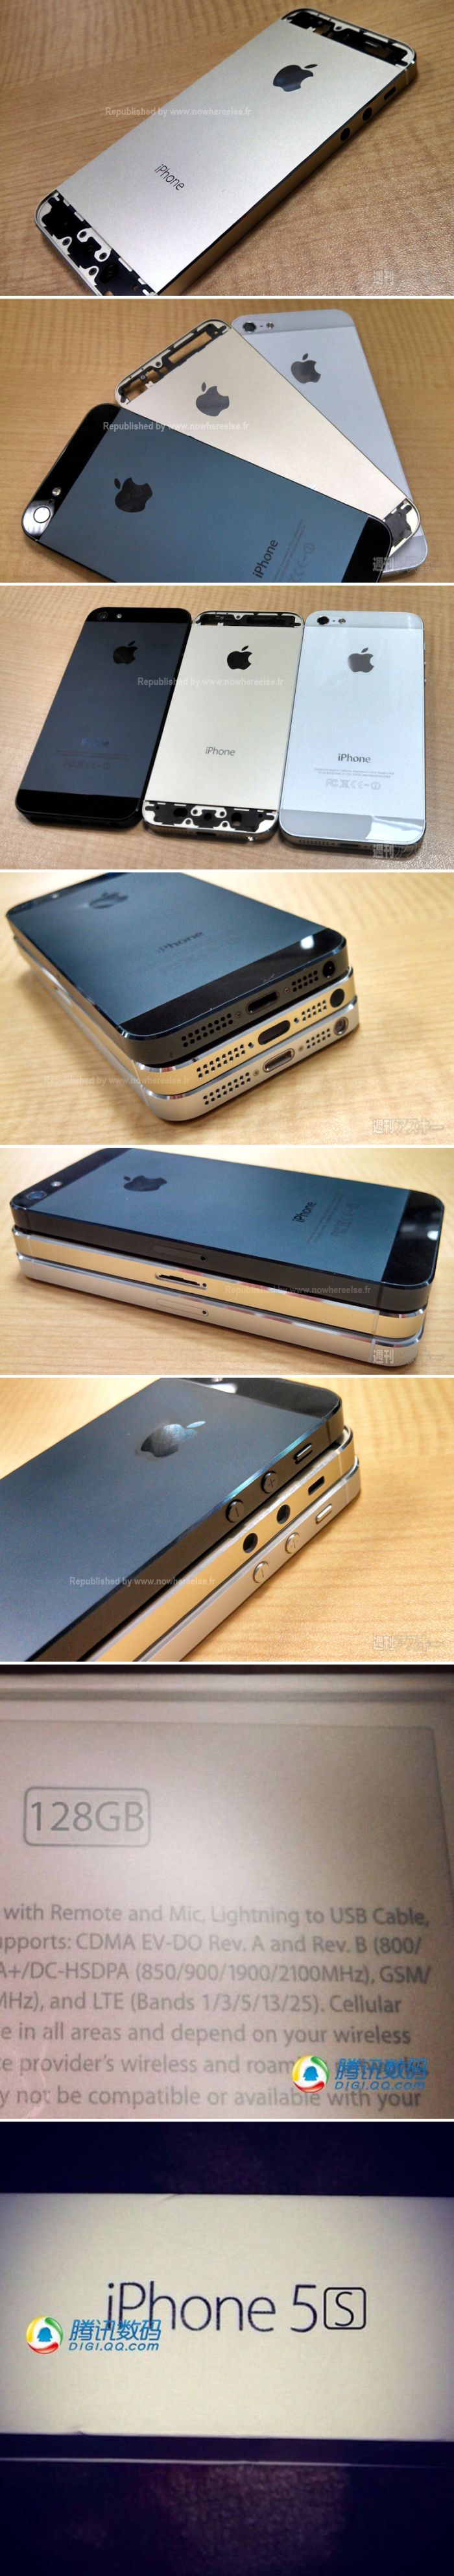 Friss fotókon az aranyszínű iPhone 5S!